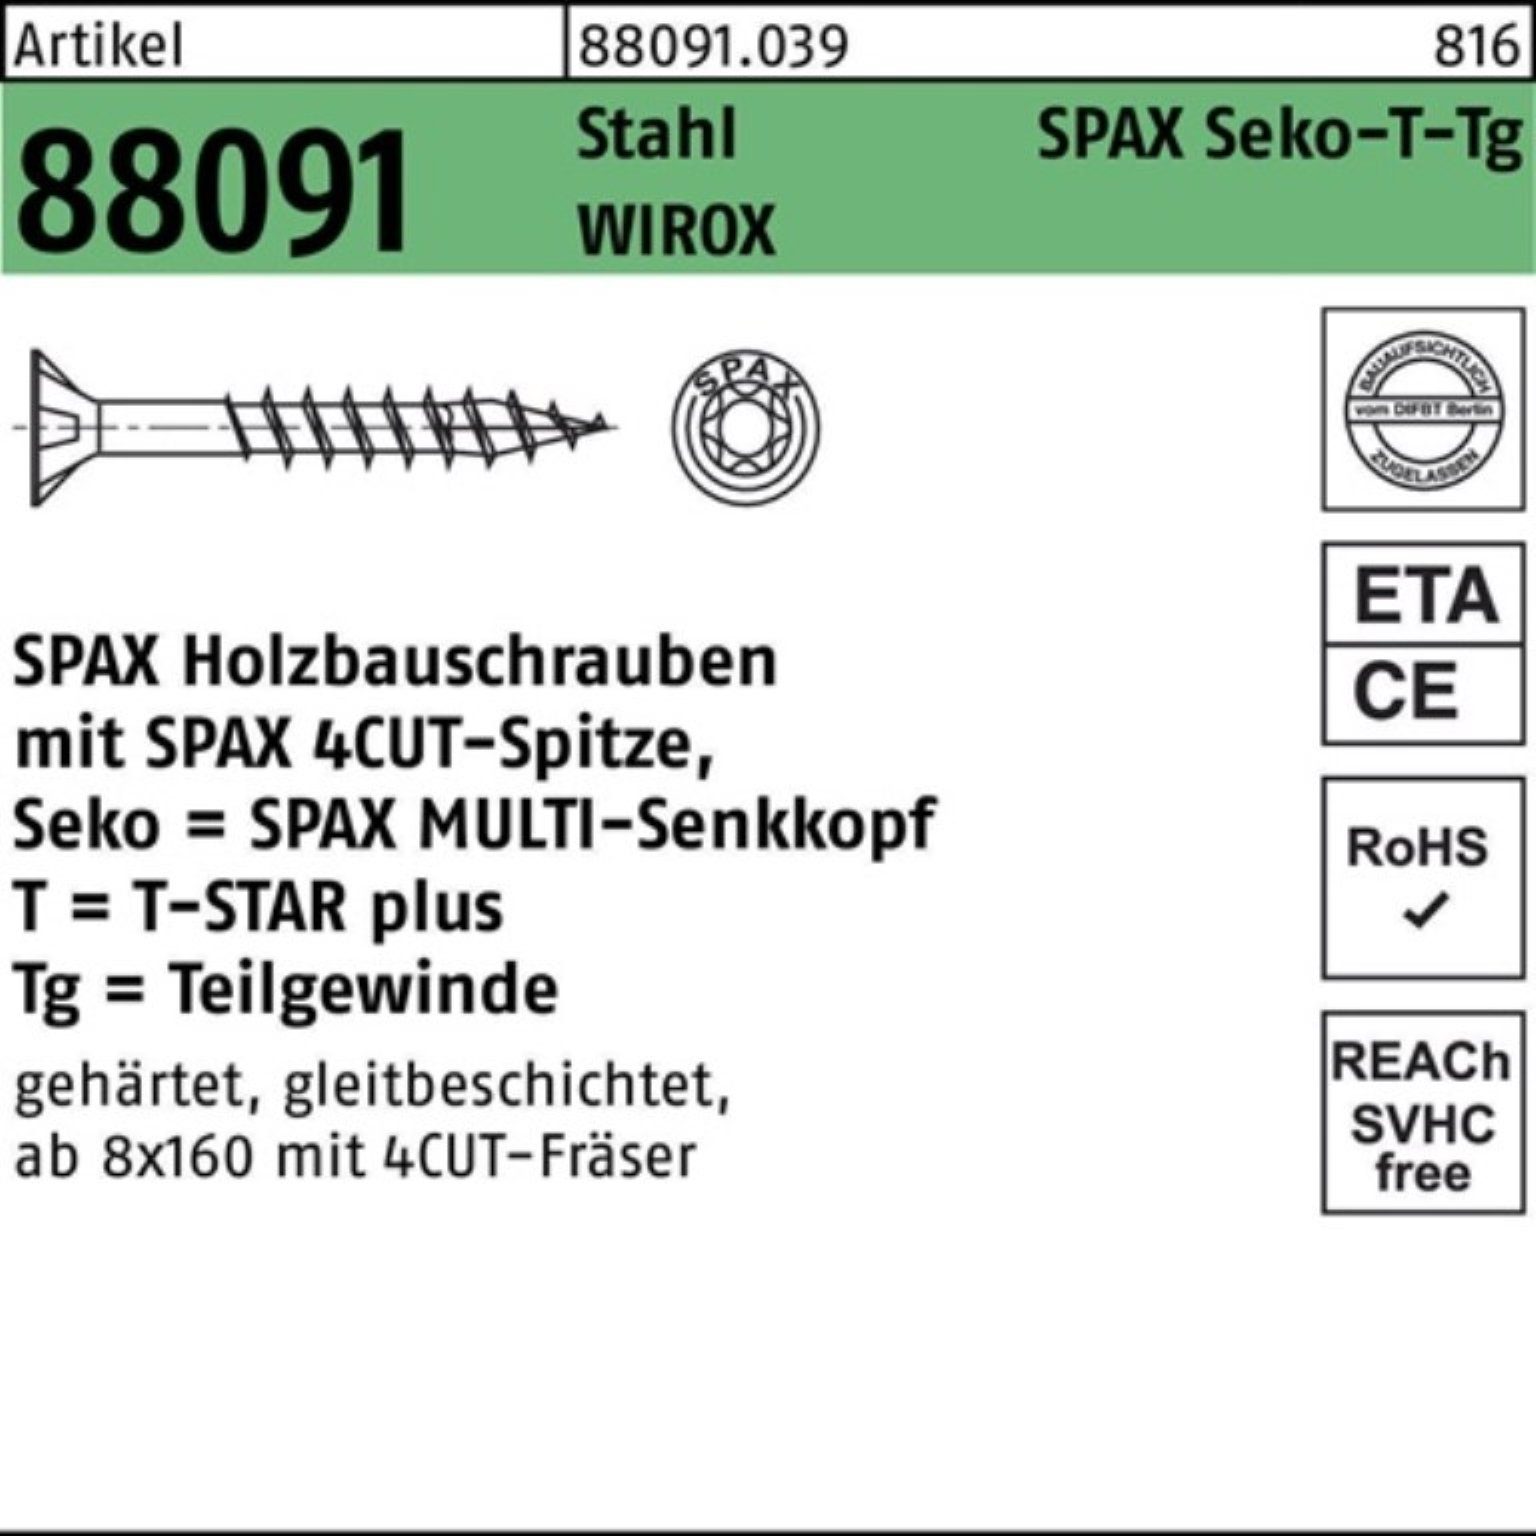 R SPAX 220/80-T50 100er Pack 10x 88091 Schraube TG Schraube Stahl WIROX SEKO/T-STAR